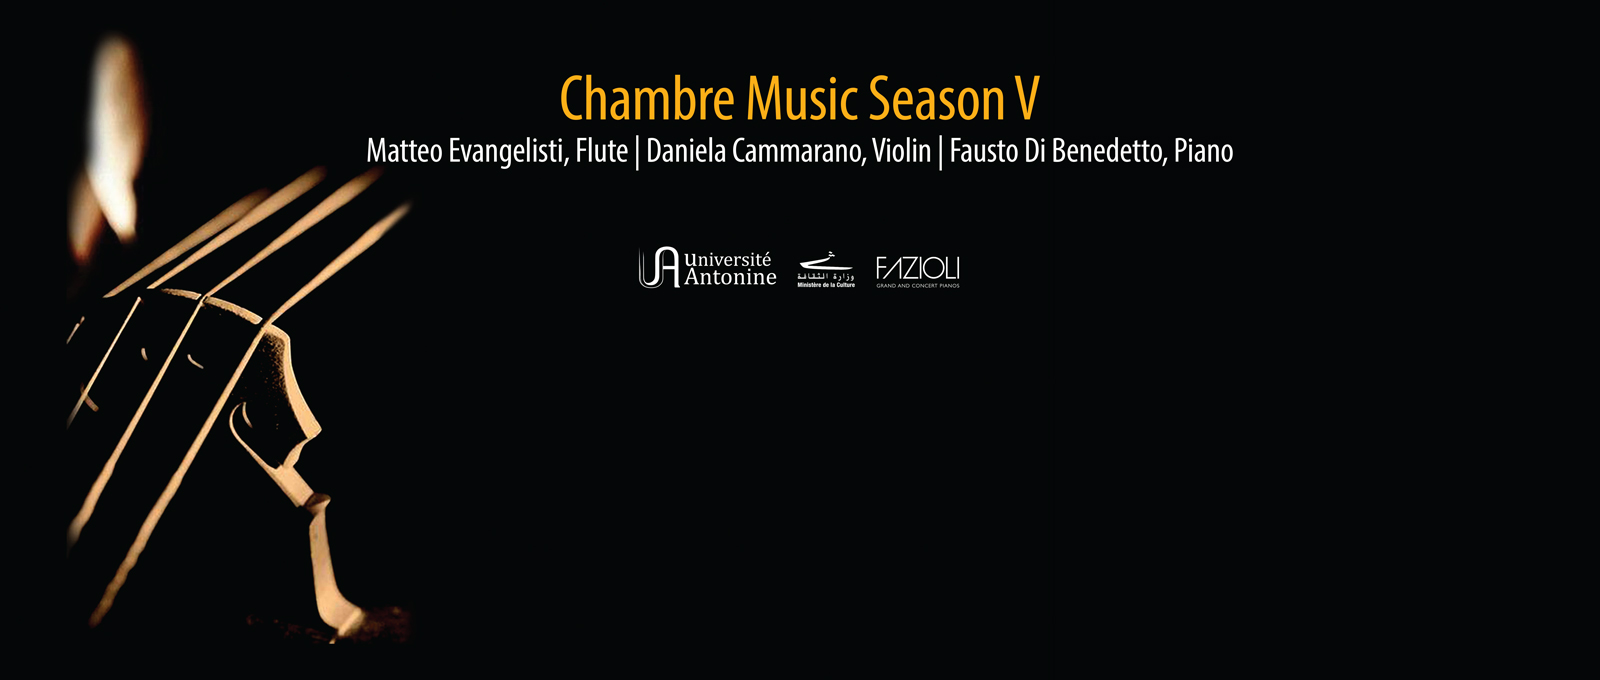 Matteo Evangelisti, Flute | Daniela Cammarano, Violin | Fausto Di Benedetto, Piano